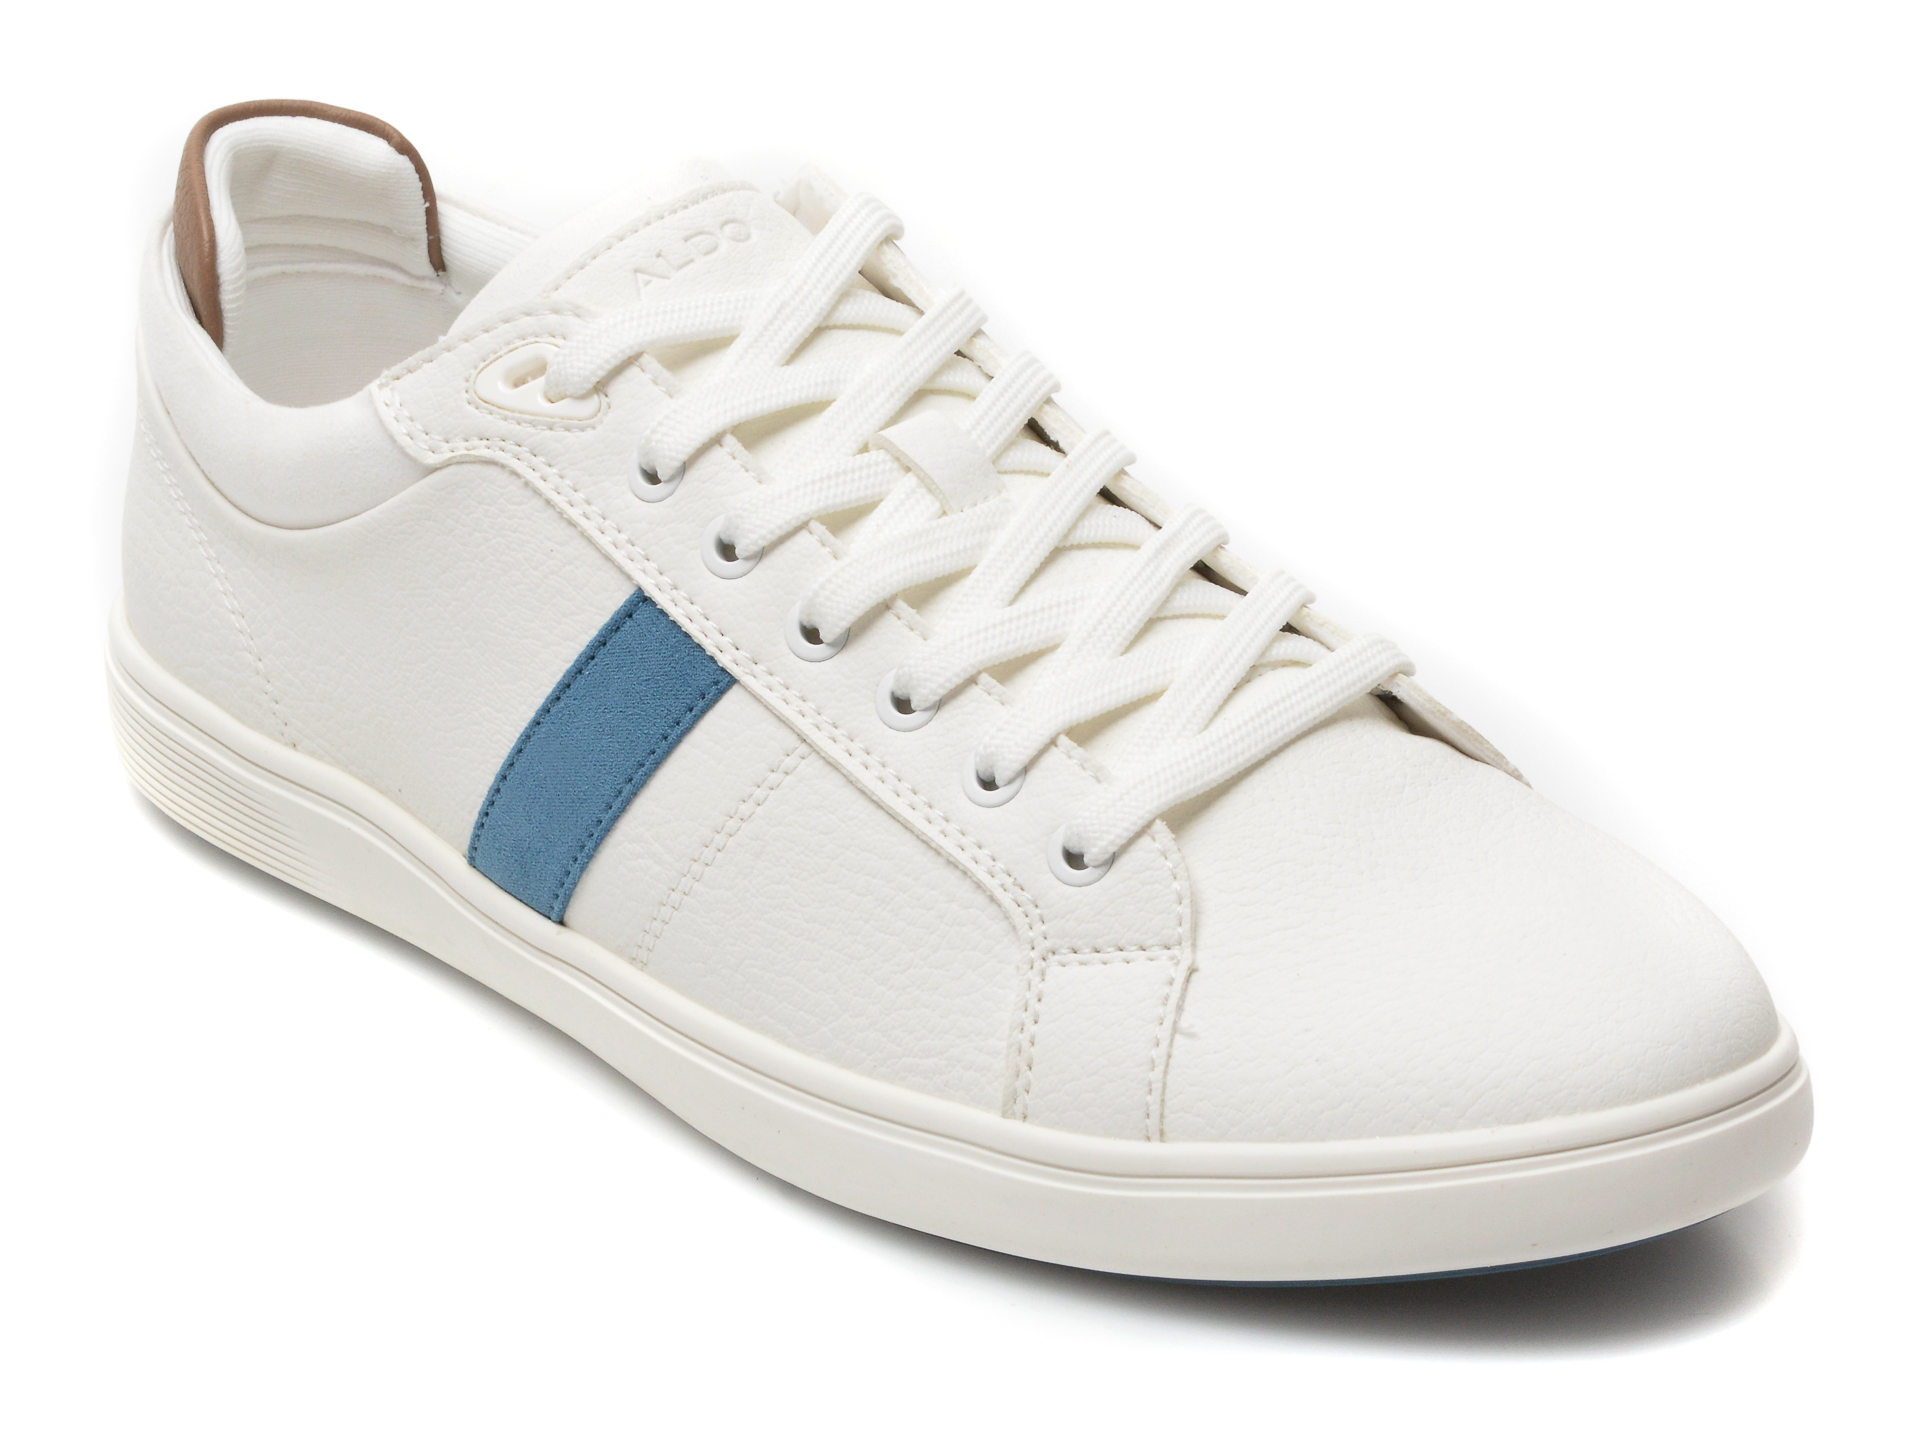 Pantofi sport ALDO albi, KOISENN112, din piele ecologica Aldo Aldo